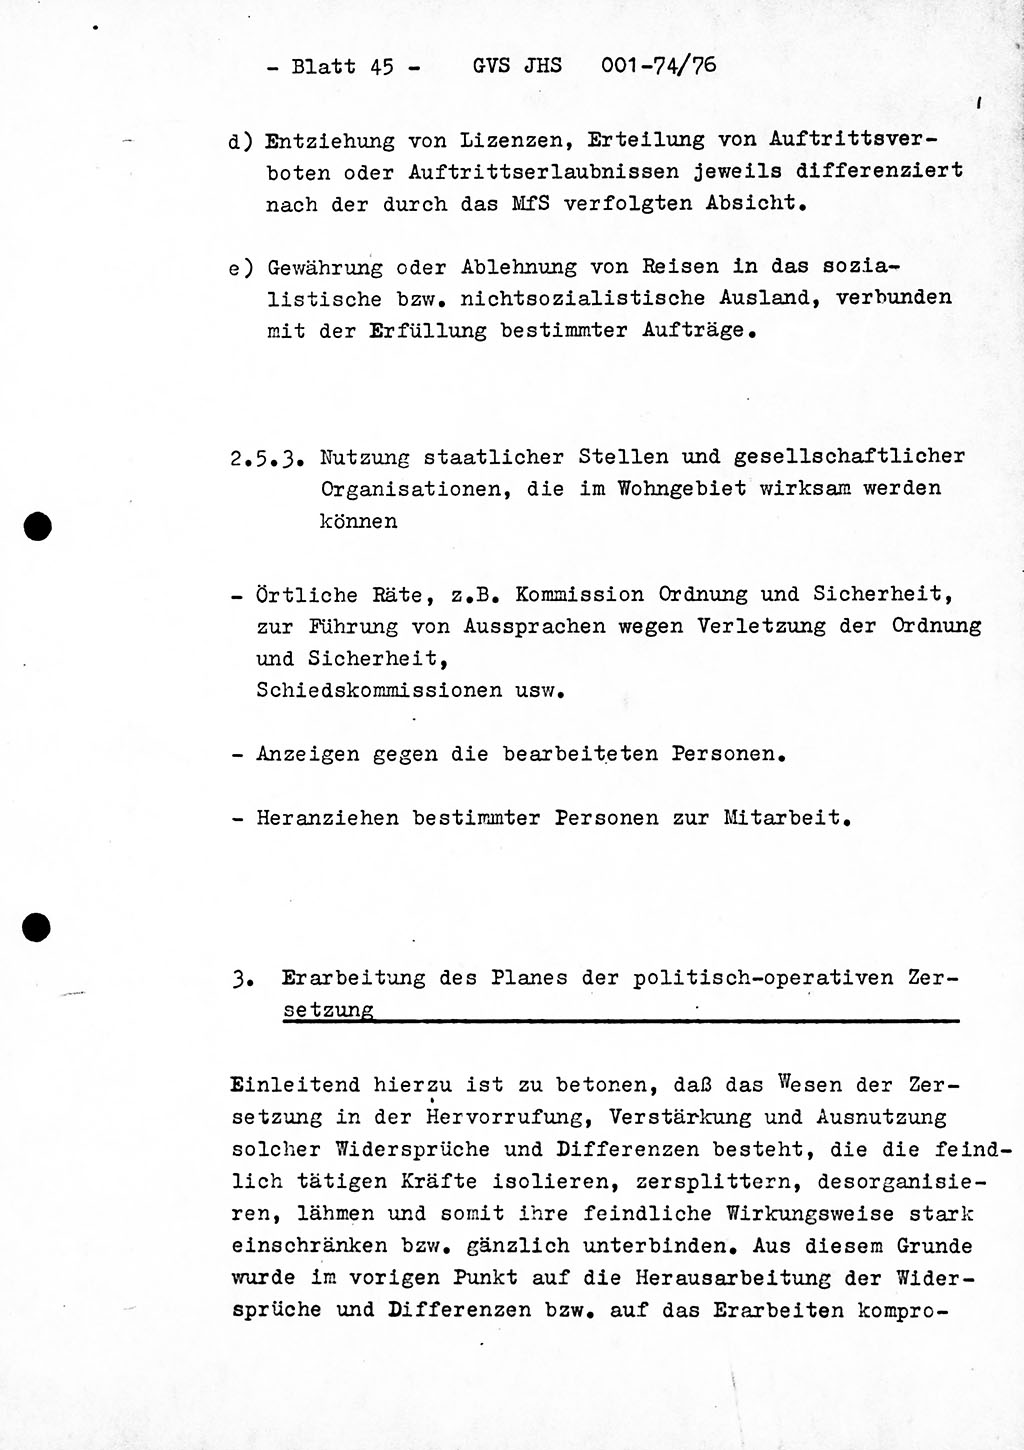 Diplomarbeit Hauptmann Joachim Tischendorf (HA ⅩⅩ), Ministerium für Staatssicherheit (MfS) der Deutschen Demokratischen Republik (DDR), Juristische Hochschule (JHS), Geheime Verschlußsache (GVS) 001-74/76, Potsdam 1976, Seite 45 (Dipl.-Arb. MfS DDR JHS GVS 001-74/76 1976, S. 45)